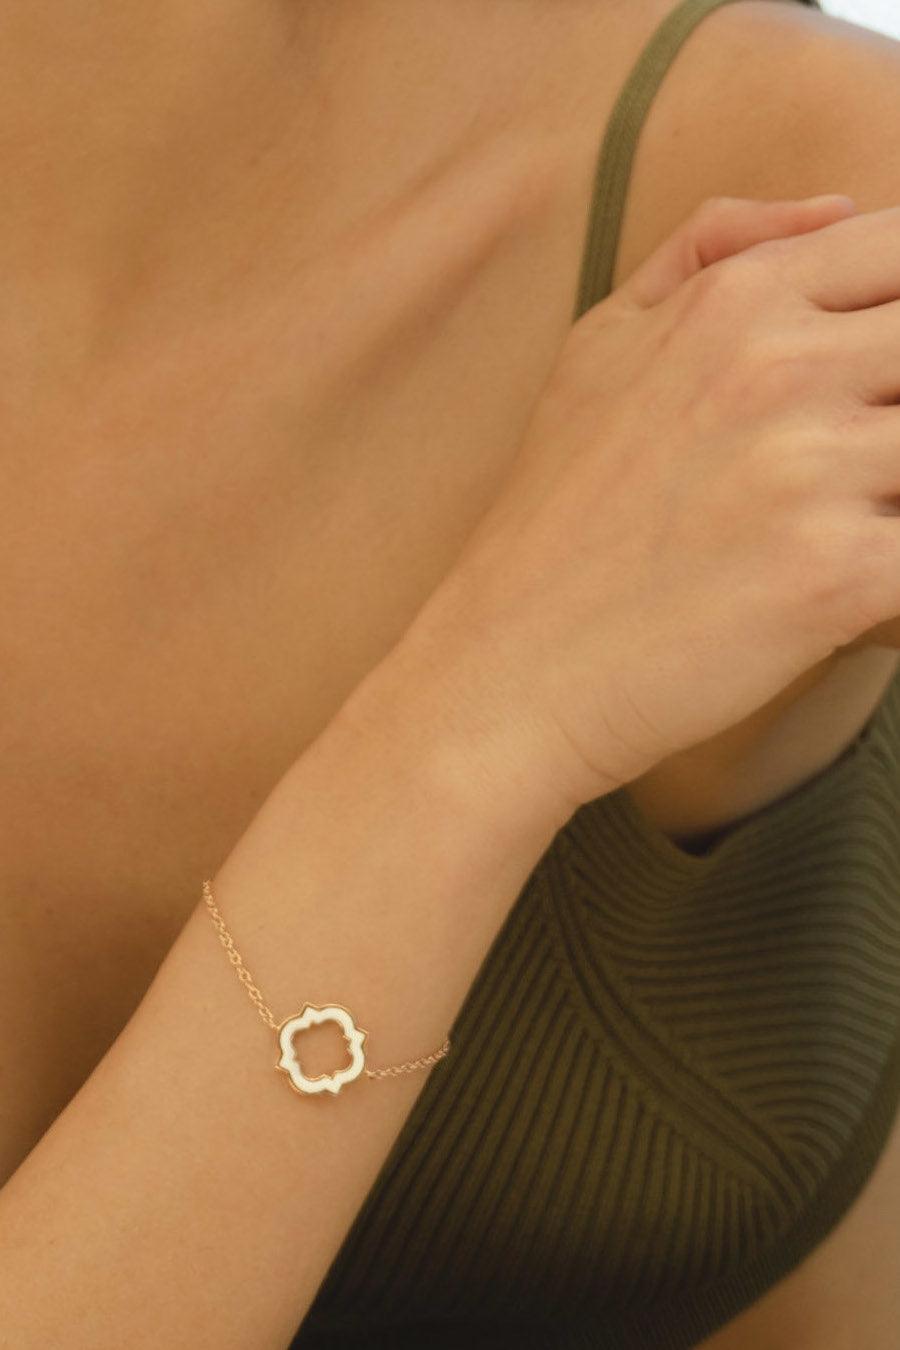 Anime Bracelet, Rose Gold And White Enamel - Moregola Fine Jewelry